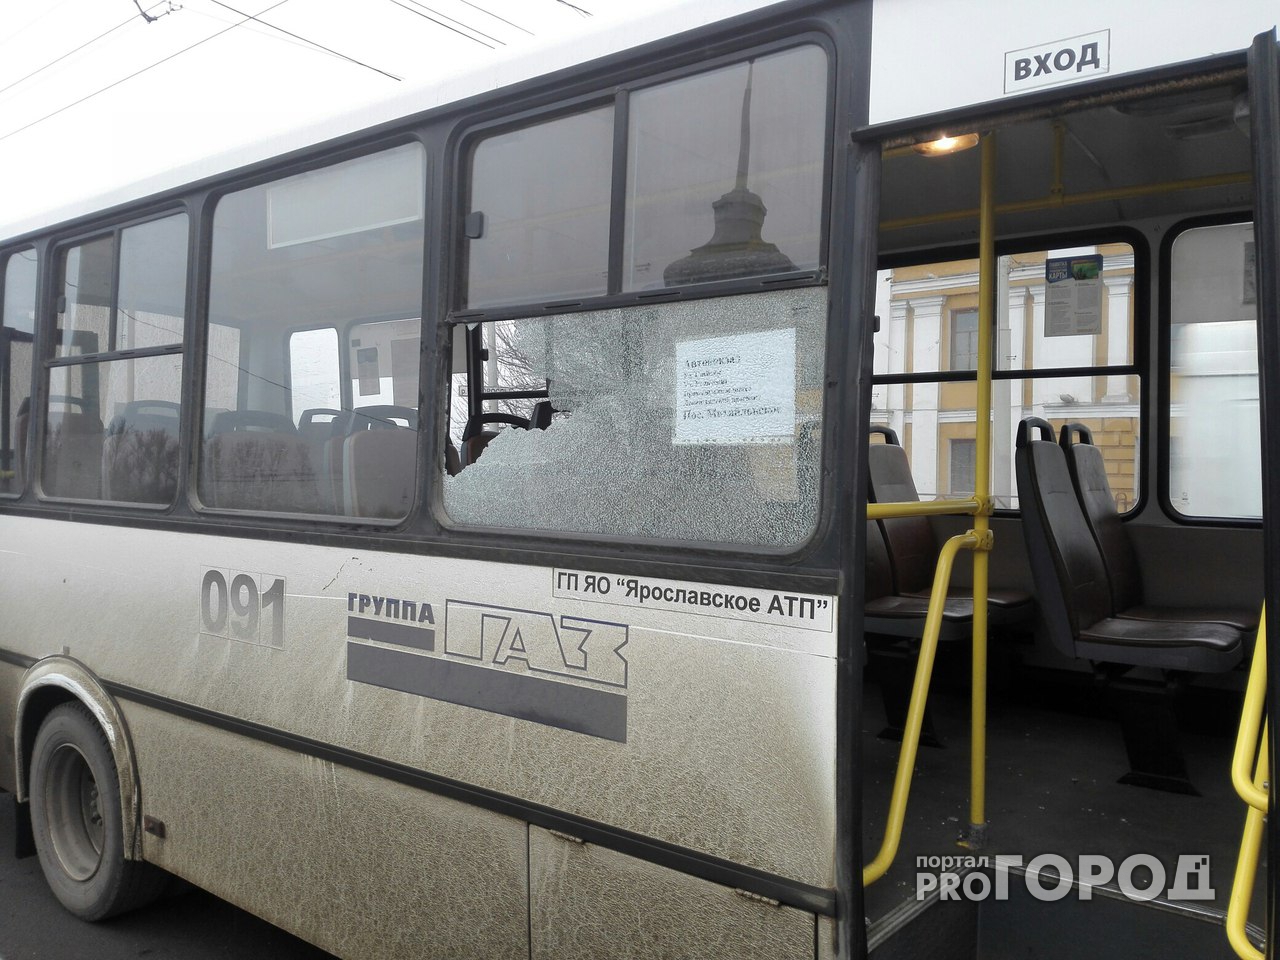 Из-за 97-й маршрутки на мосту в Ярославле столкнулись автобус и троллейбус